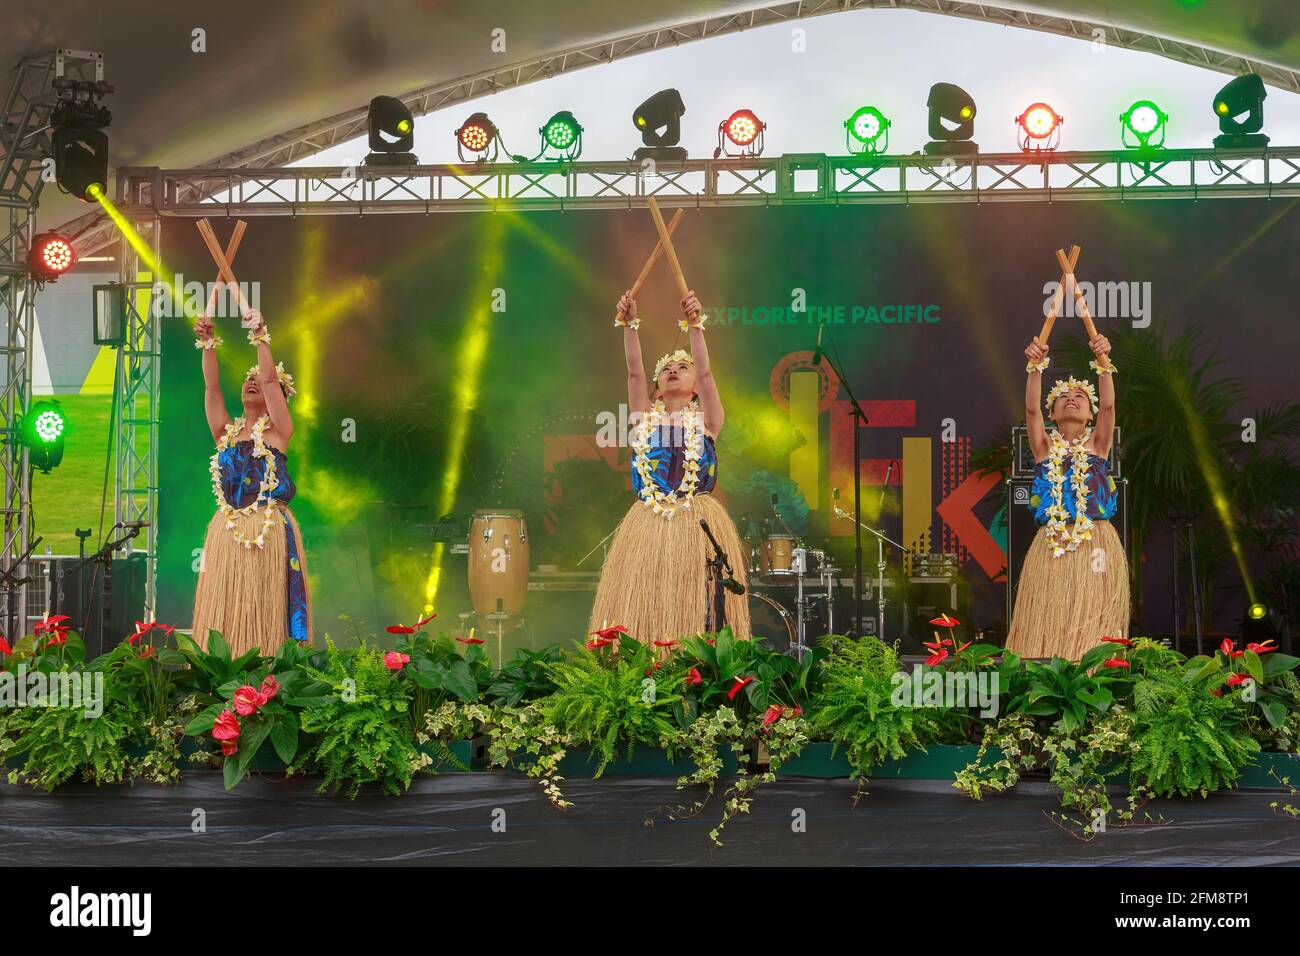 Hawaiianische Hula-Tänzer treten mit Bambusstäben auf, um den Takt beim Pasifika Festival zu halten, einem Fest der Kultur der Pazifikinsel. Auckland, Neuseeland Stockfoto